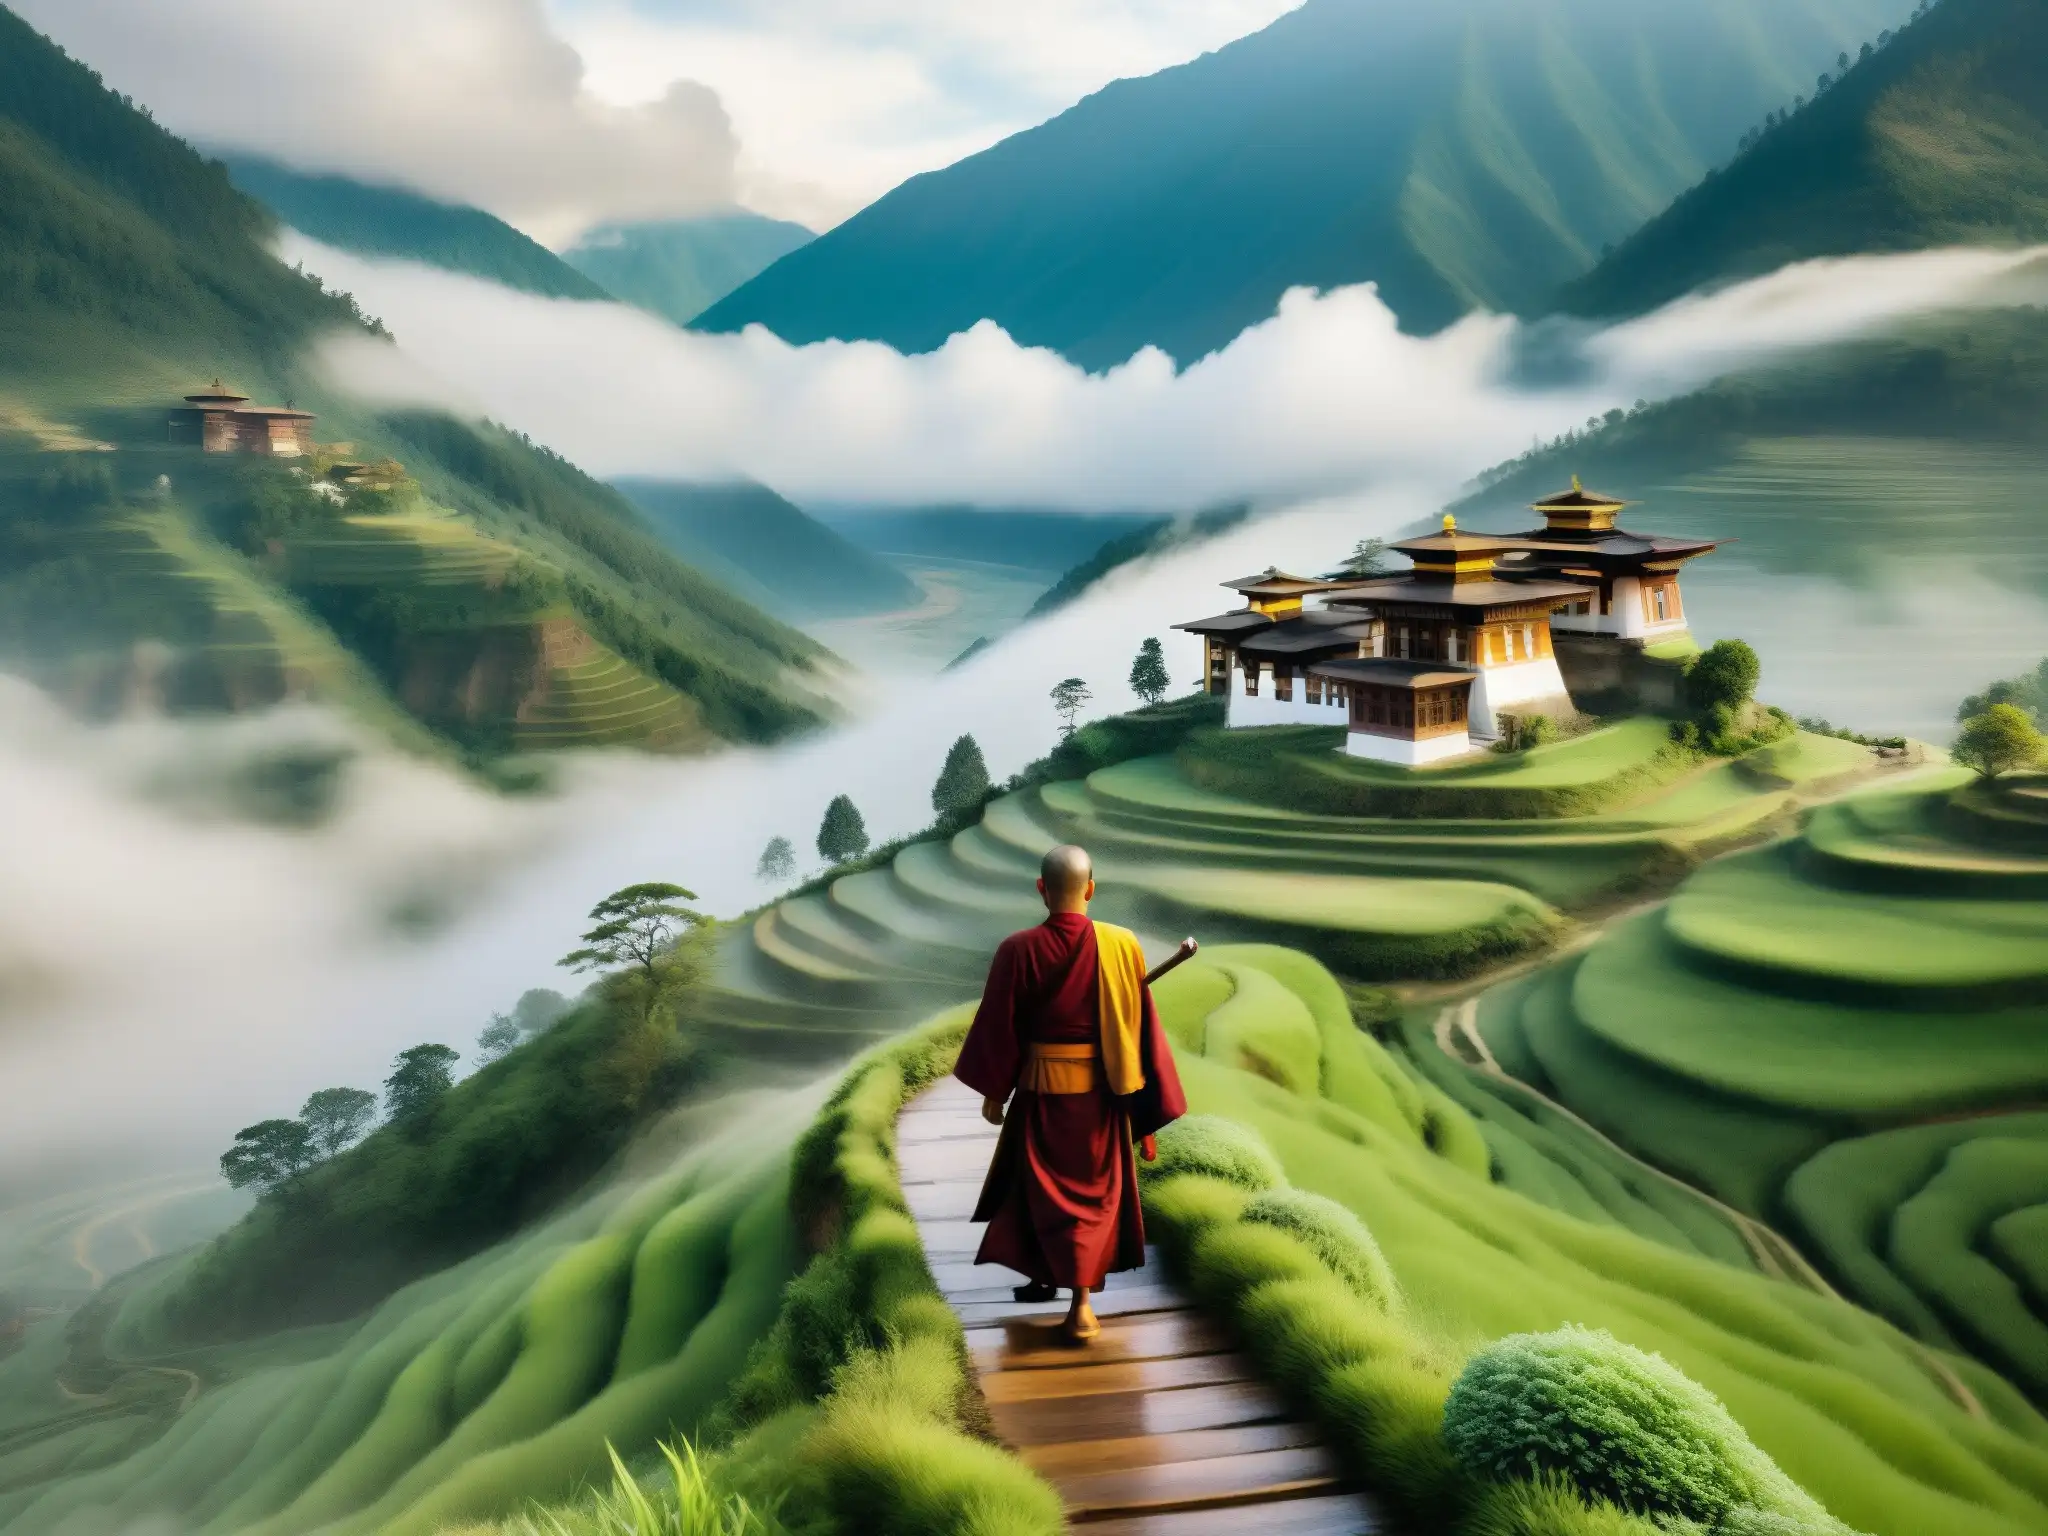 Un monje solitario camina por sendero en las montañas brumosas de Bhután, evocando el Espíritu del Monje Errante Bhután